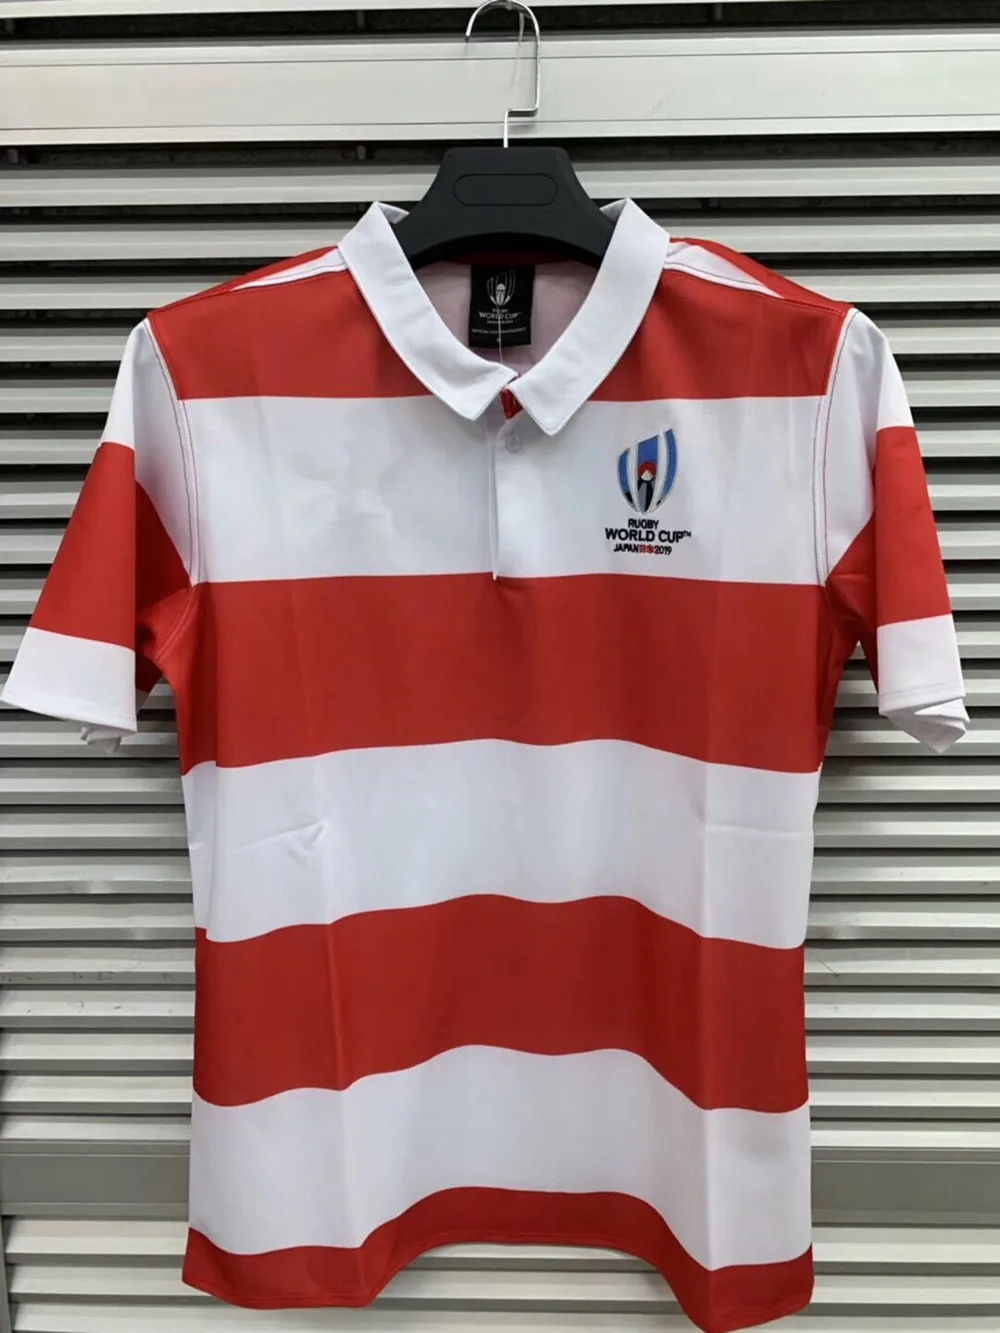 اليابان 2019 كأس العالم المنزل جيرسي قميص اليابان المنتخب الوطني قميص كرة قدم أمريكية مصنوع من الصوف قمصان s-3xl